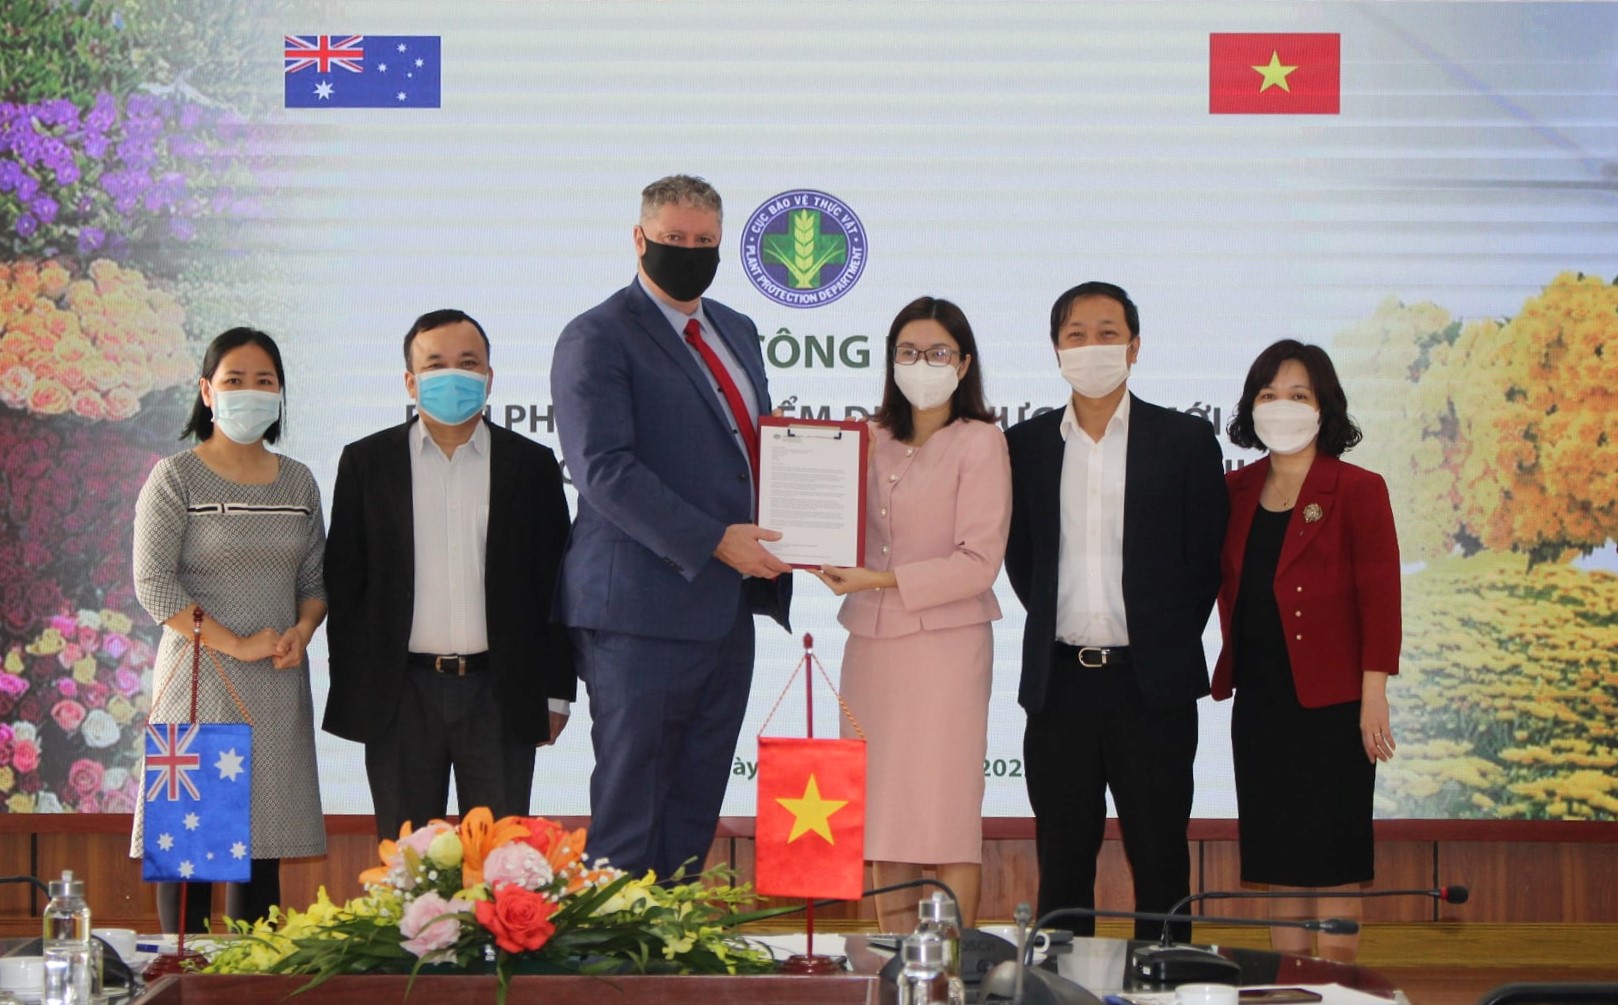 Cục Bảo vệ Thực vật (Bộ Nông nghiệp và Phát triển nông thôn – NN&PTNT) vừa phối hợp với Đại sứ quán Úc tại Việt Nam, tổ chức công bố thỏa thuận sử dụng hoạt chất Metsulfuron methyl thay thế cho Glyphosate